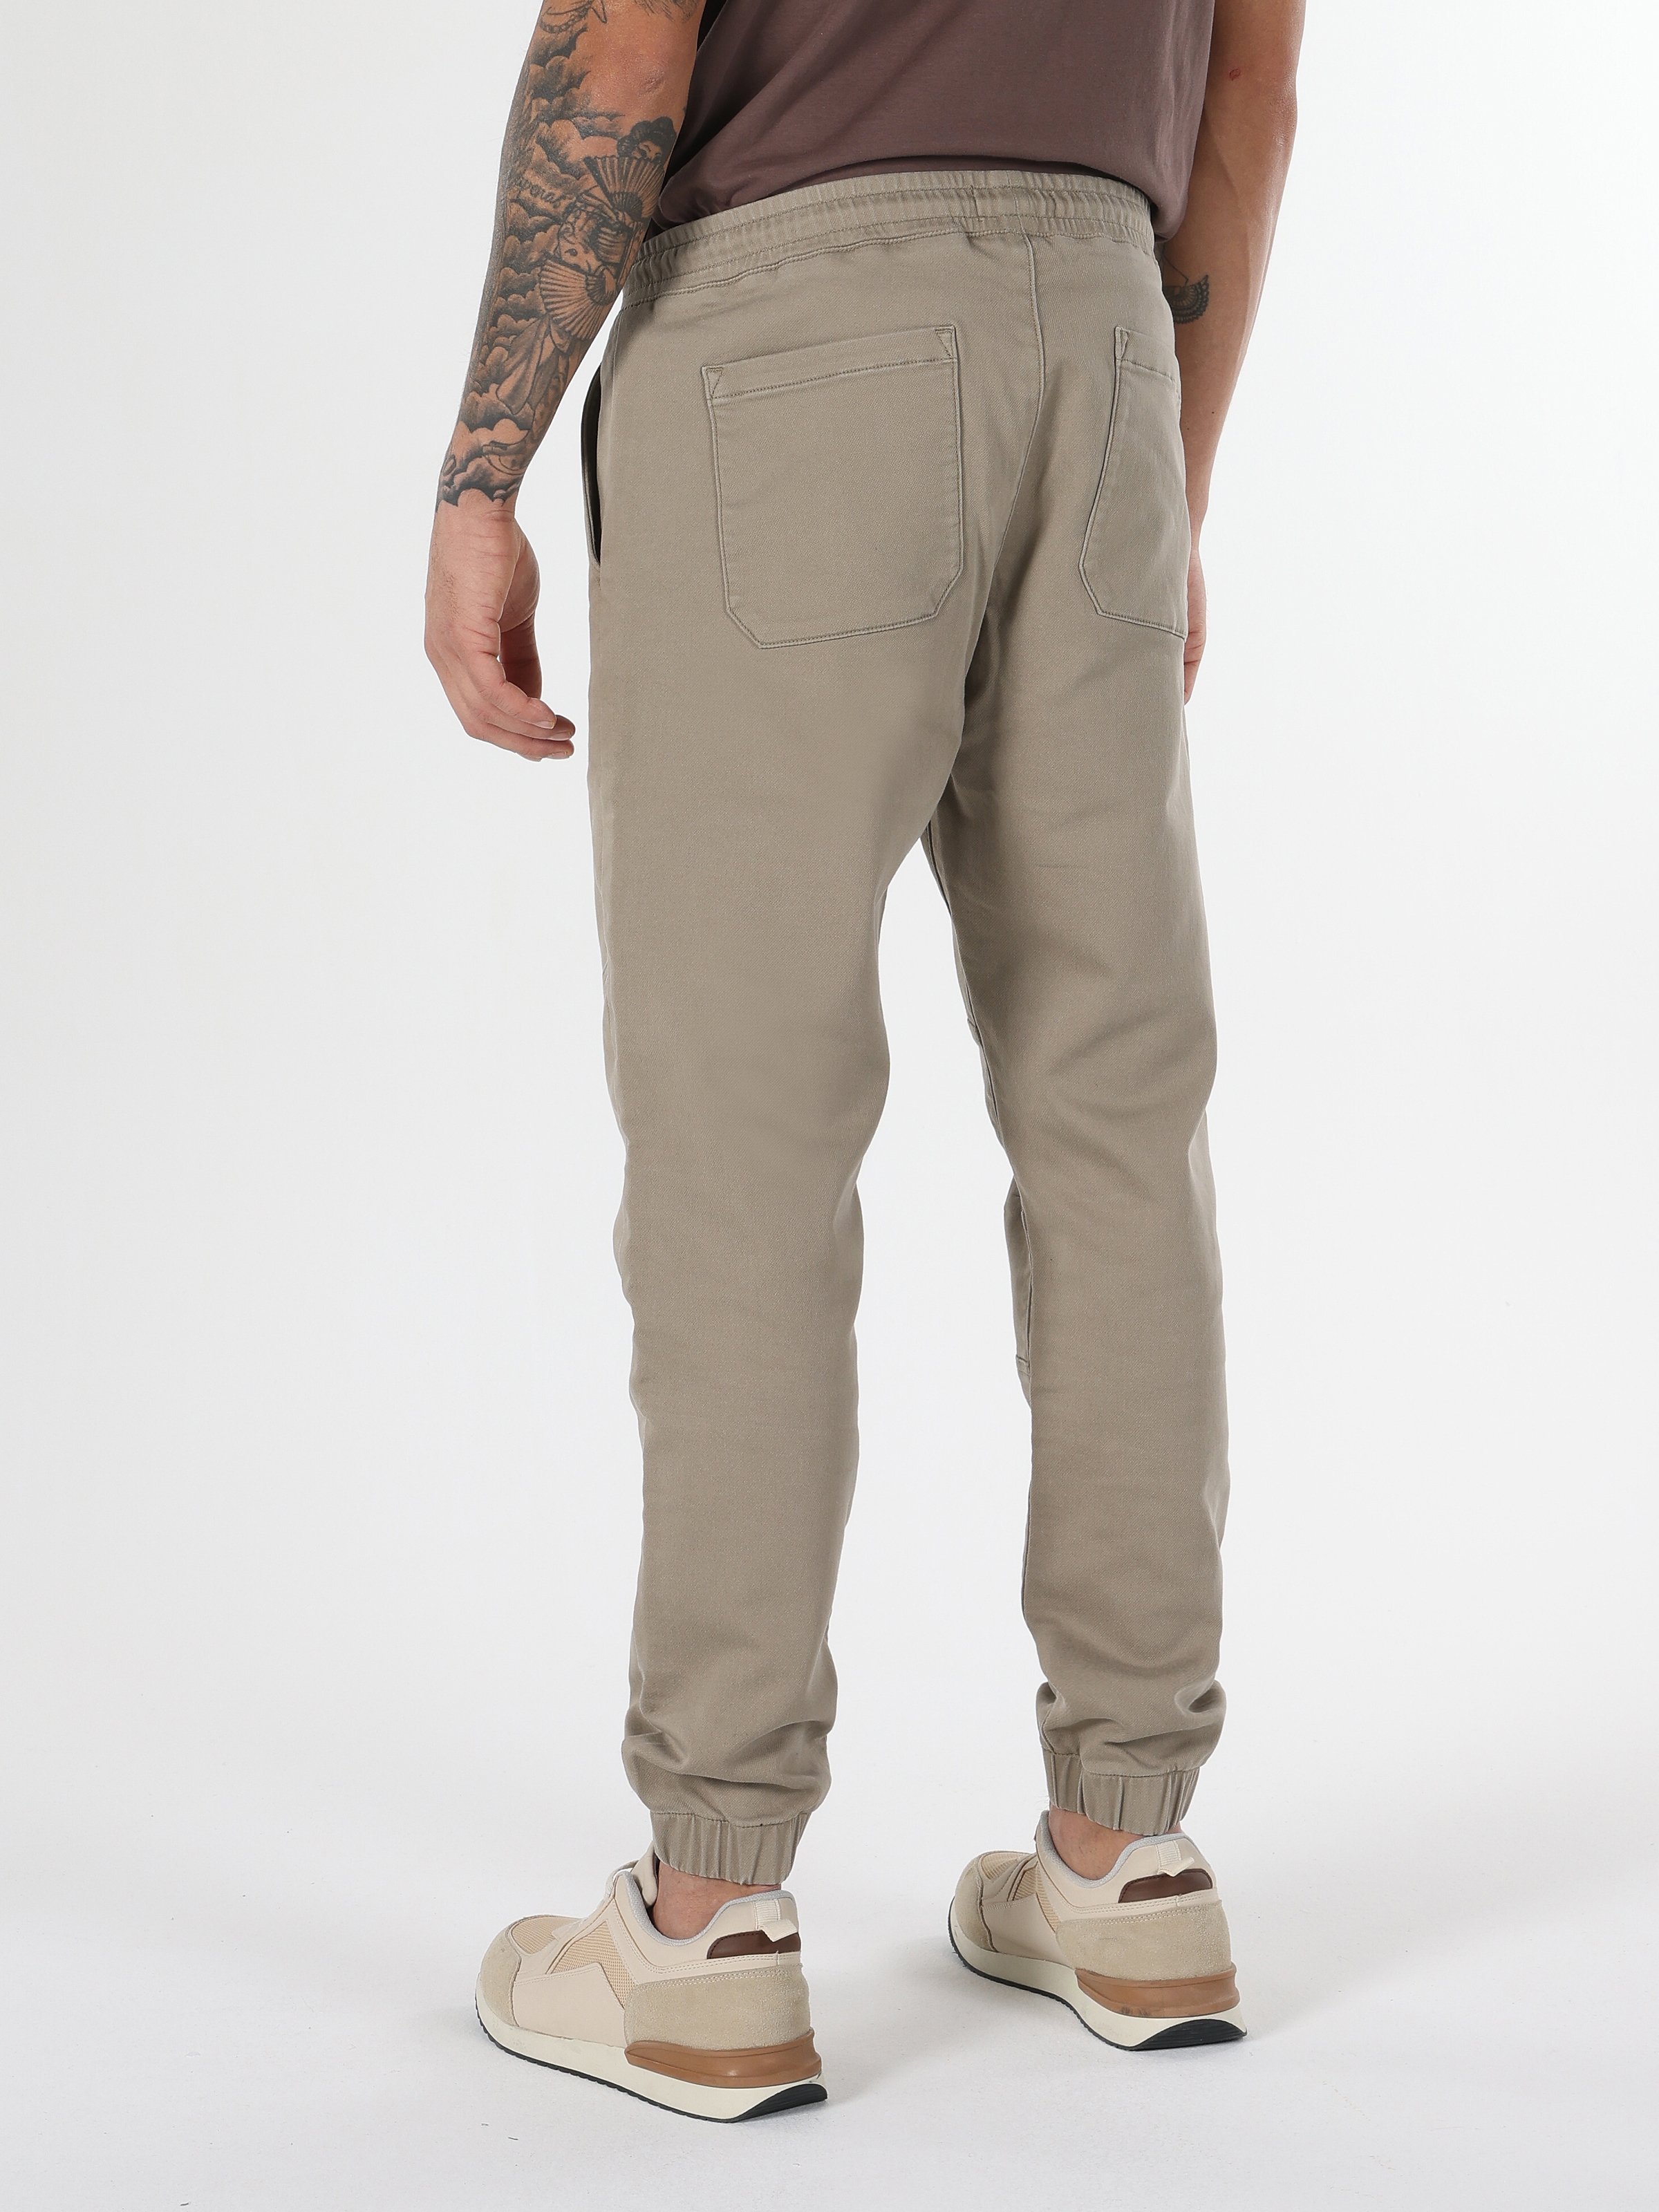 Afficher les détails de Pantalon Homme Coupe Slim Taille Moyenne À Jambe Droite